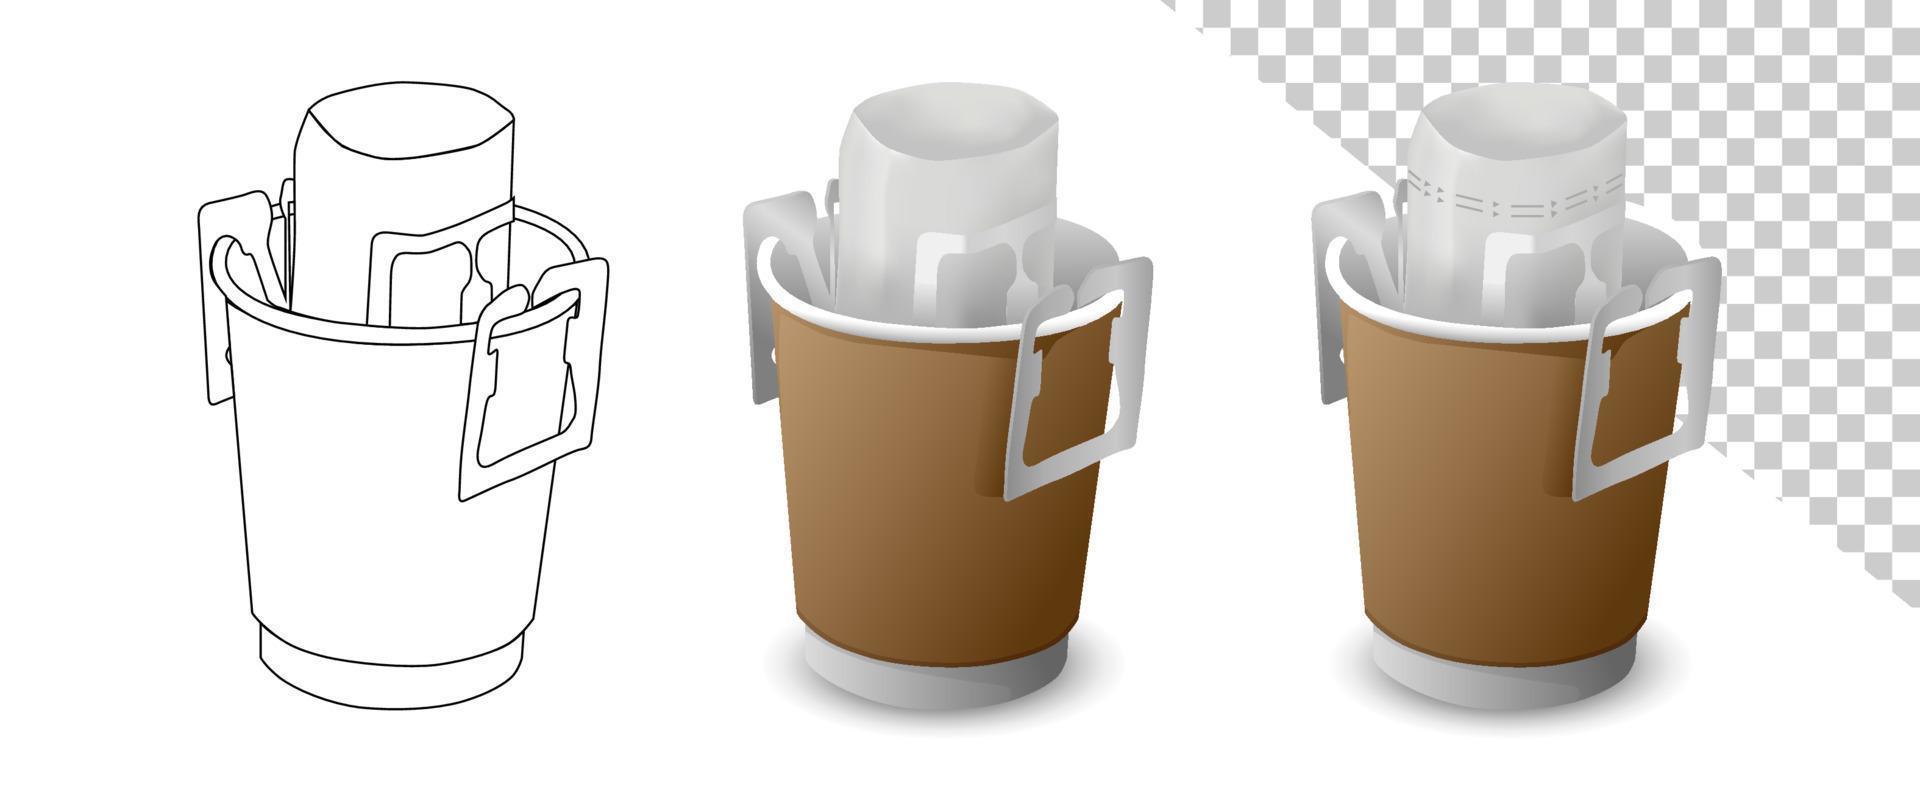 café goutte à goutte avec vecteur de sac goutte à goutte portable sur fond blanc. tasse artisanale avec sac à café dans la tasse.